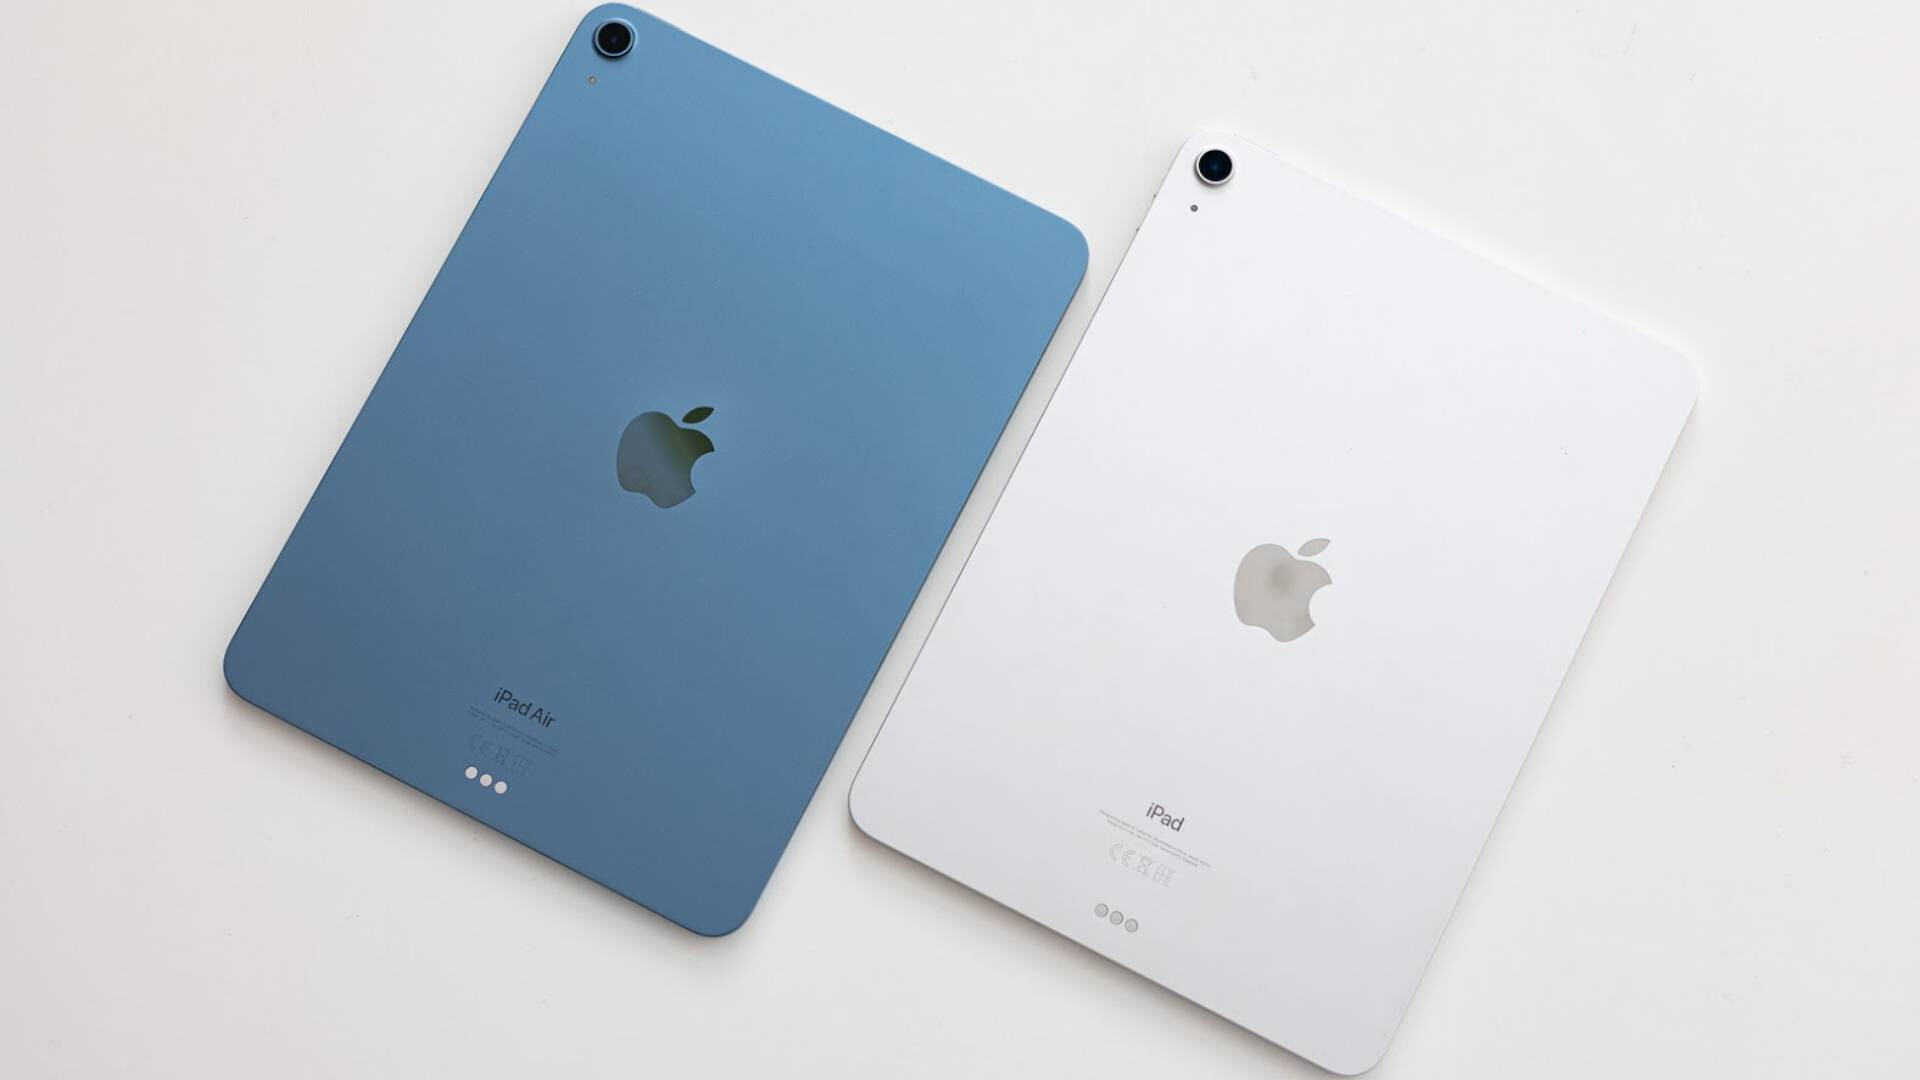 Bir sonraki iPad Air söylenti değirmeninden iki modelle çıkıyor; biri daha büyük, diğeri daha yeni bir çipe sahip - Dünyadan Güncel Teknoloji Haberleri